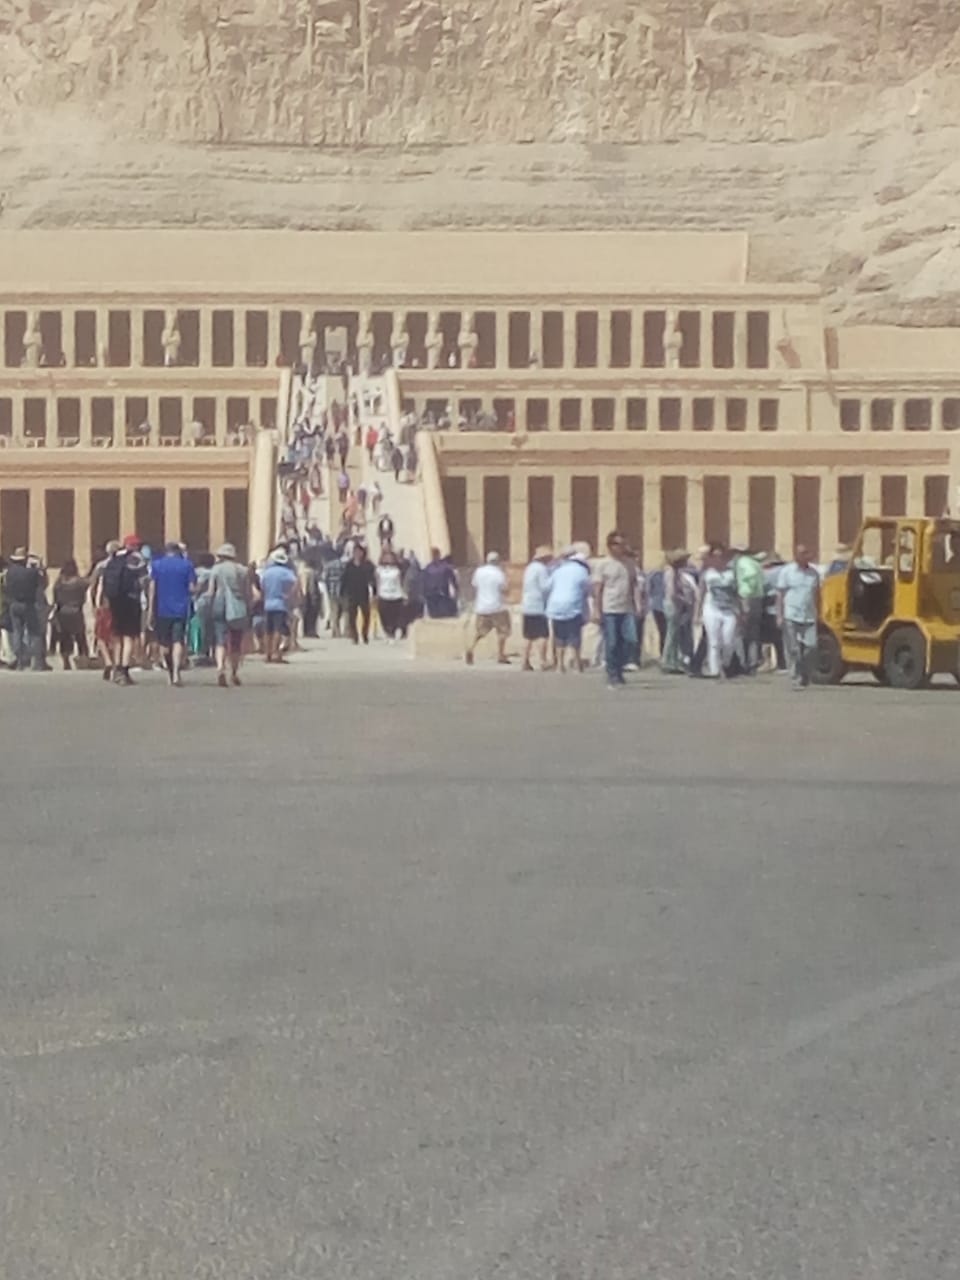 إنتعاشة سياحة كبرى فى زيارات مقابر ملوك الفراعنة ومعبد حتشبسوت  (4)